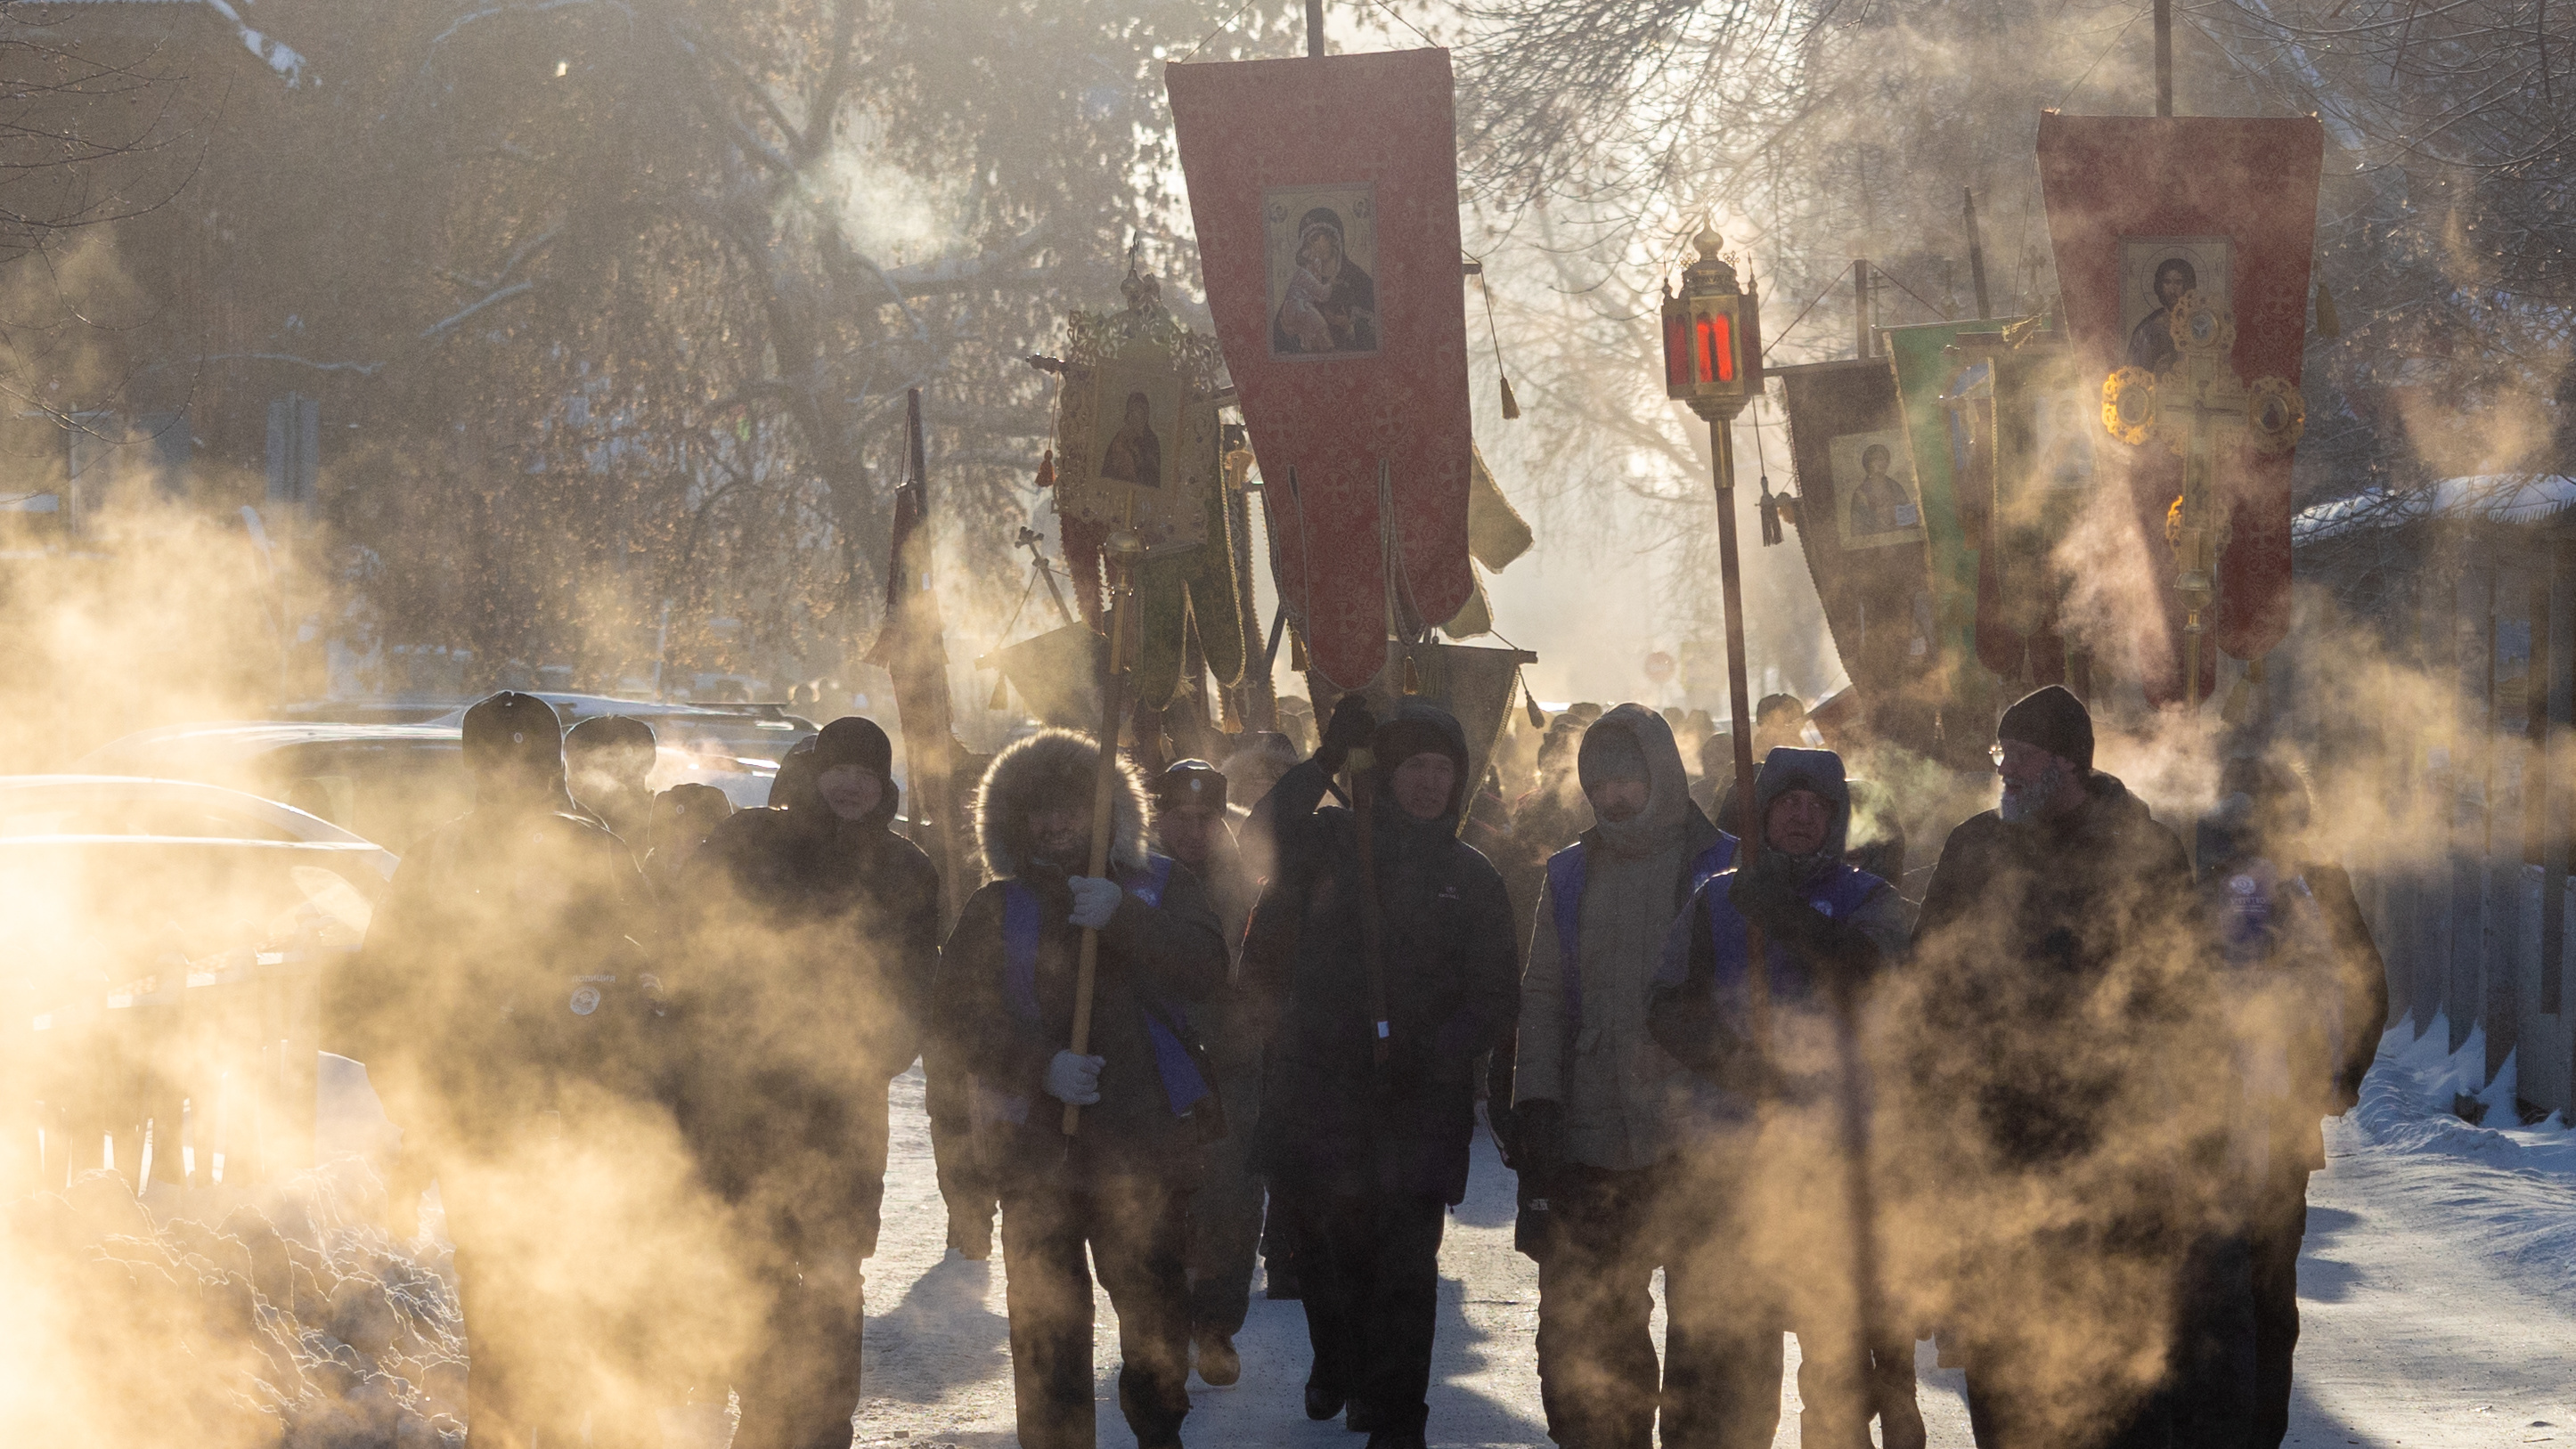 Сотни екатеринбуржцев прошли колонной по центру города в мороз. Что произошло?